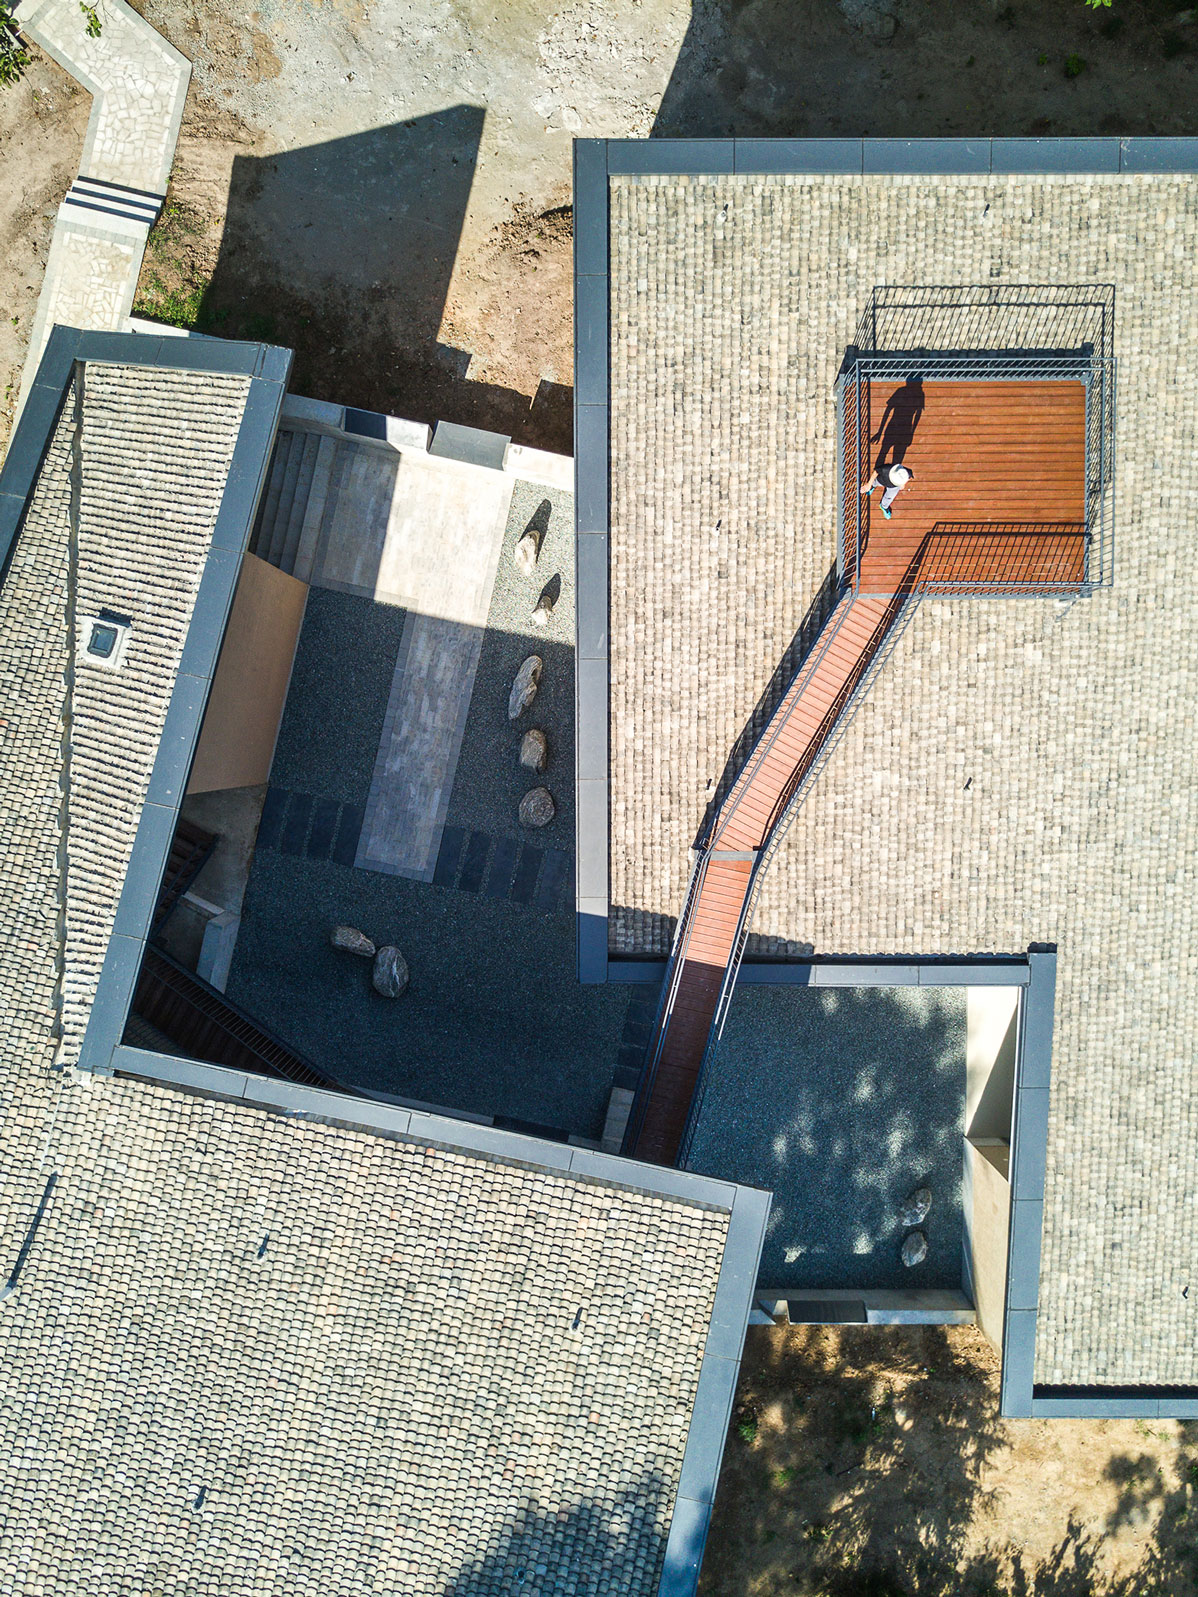 庭院与屋顶平台的构成-Layout-of-courtyard-and-roof.jpg